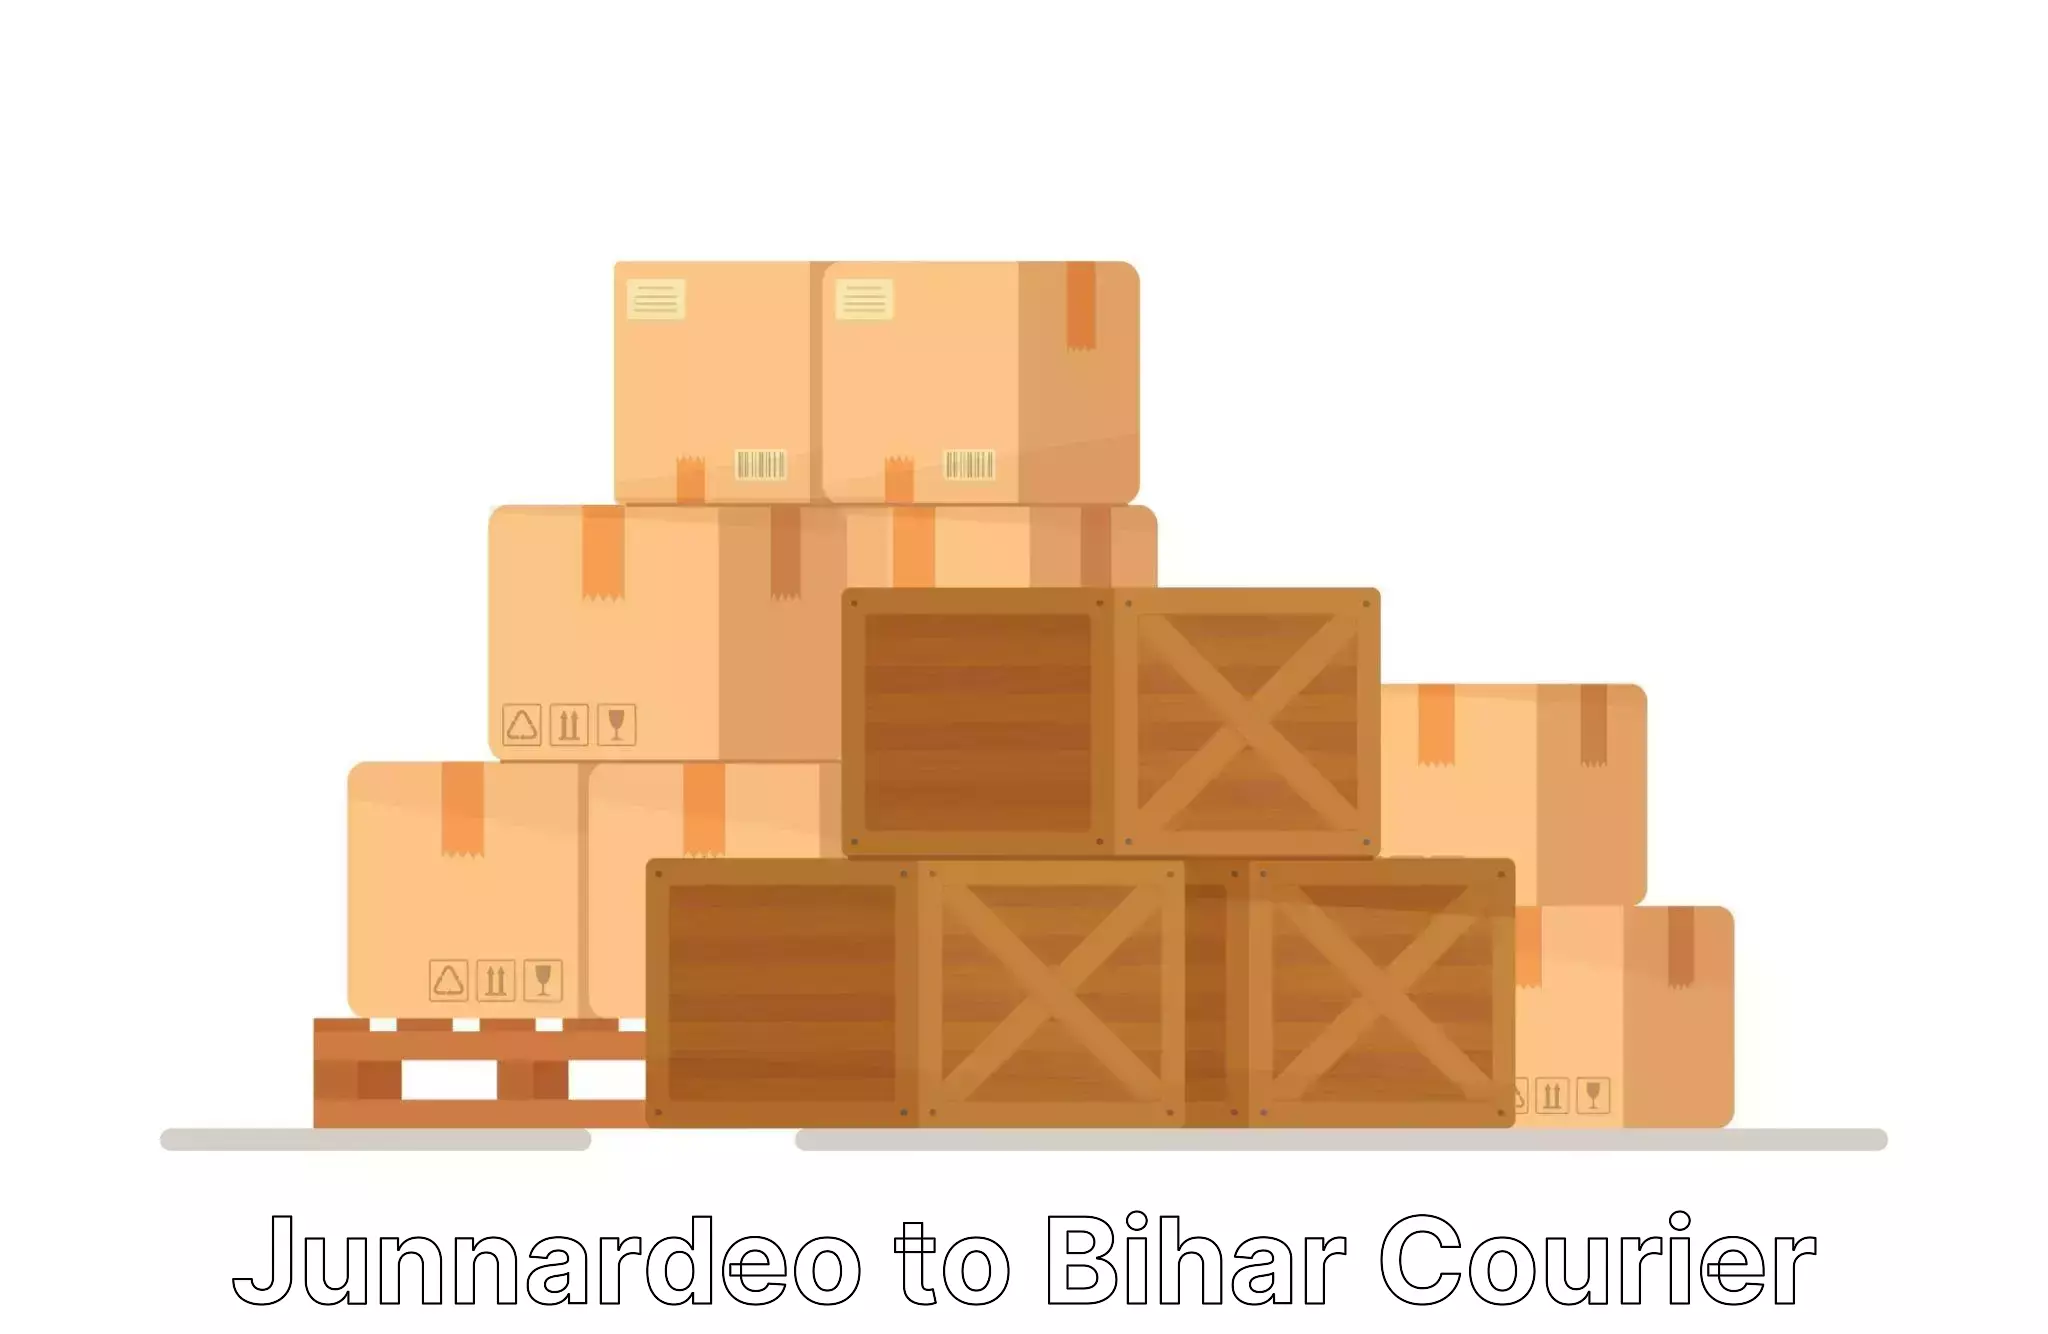 Furniture transport and logistics Junnardeo to Mahnar Bazar